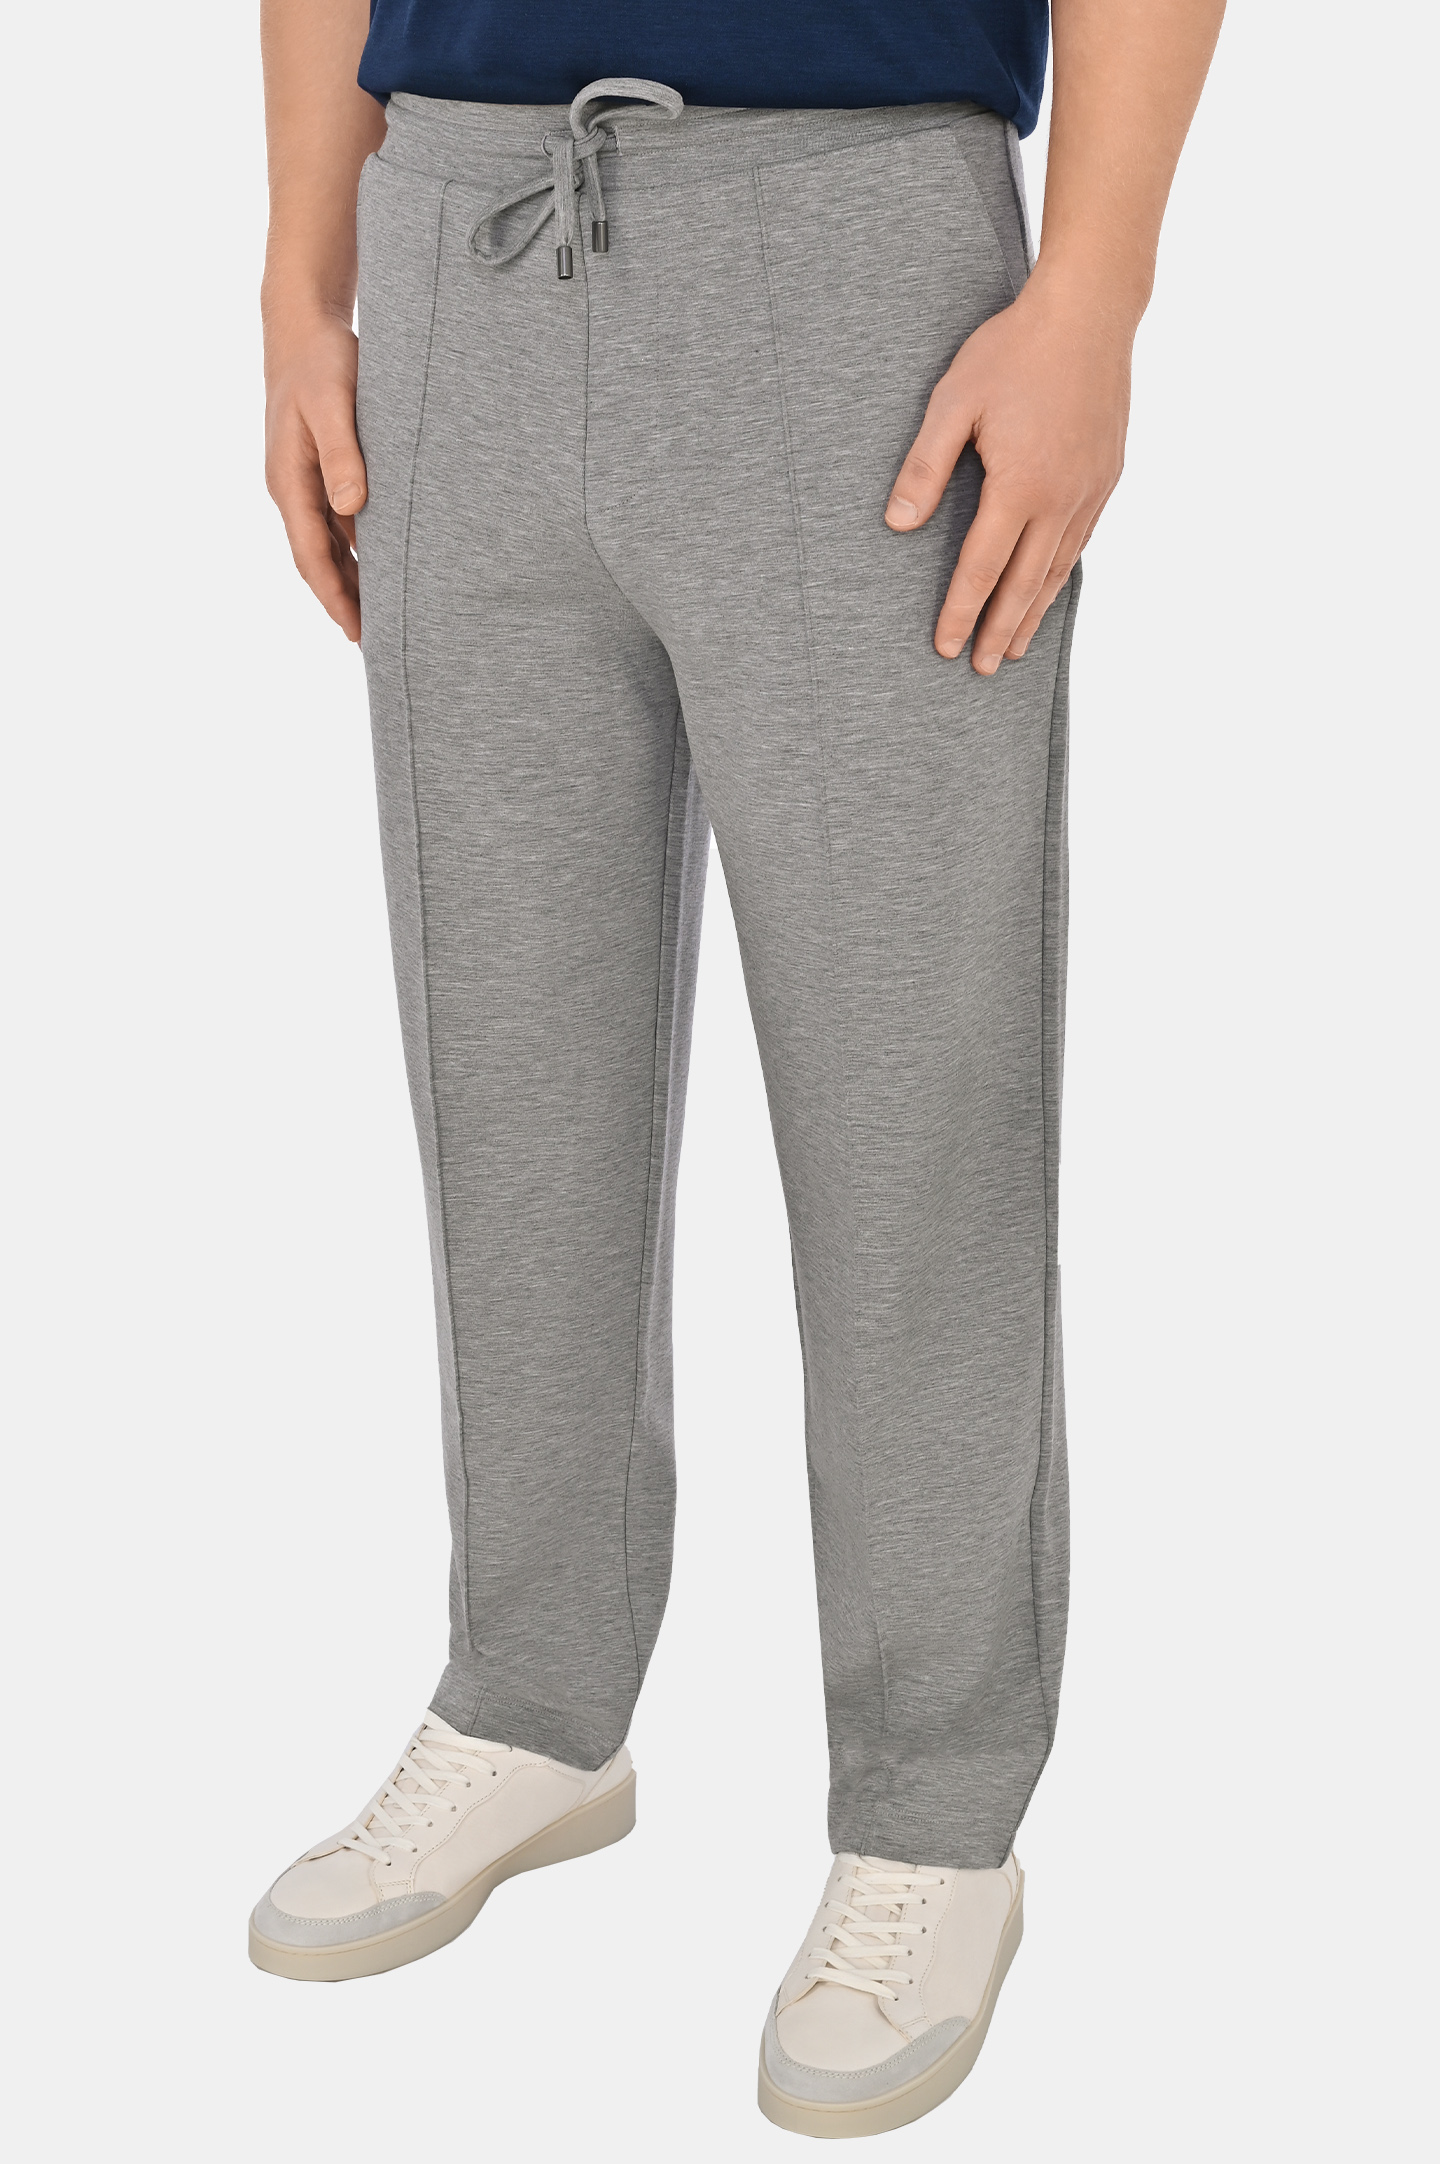 Спортивные брюки со стрелками  CANALI MJ02045 T0837, цвет: Серый, Мужской